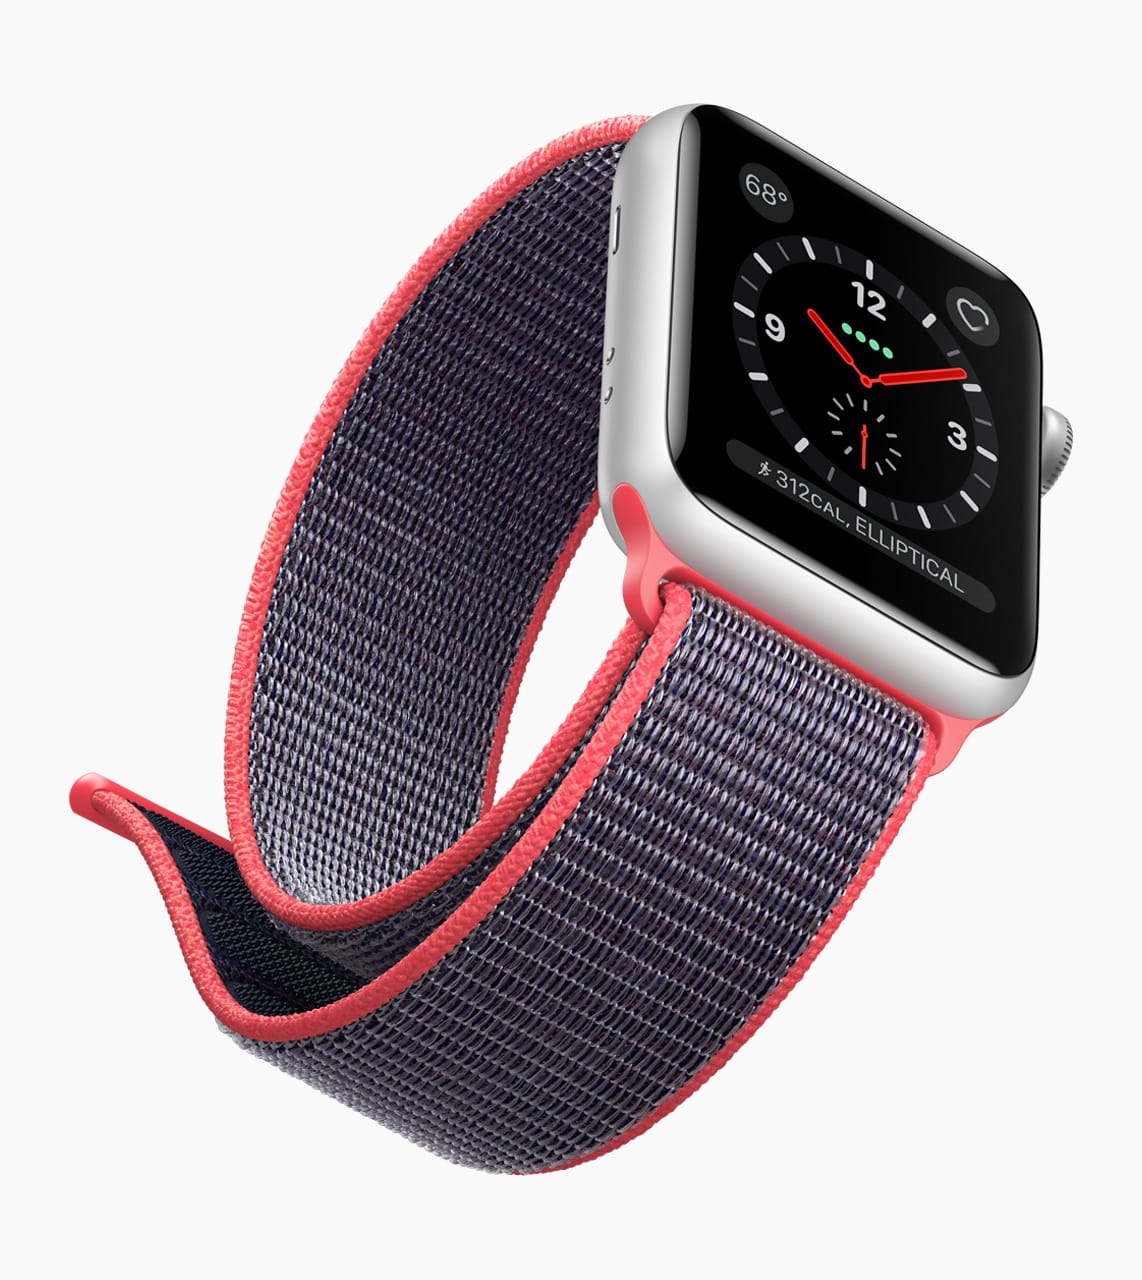 Apple Watch Series 3 : le jeu des différences entre les gammes